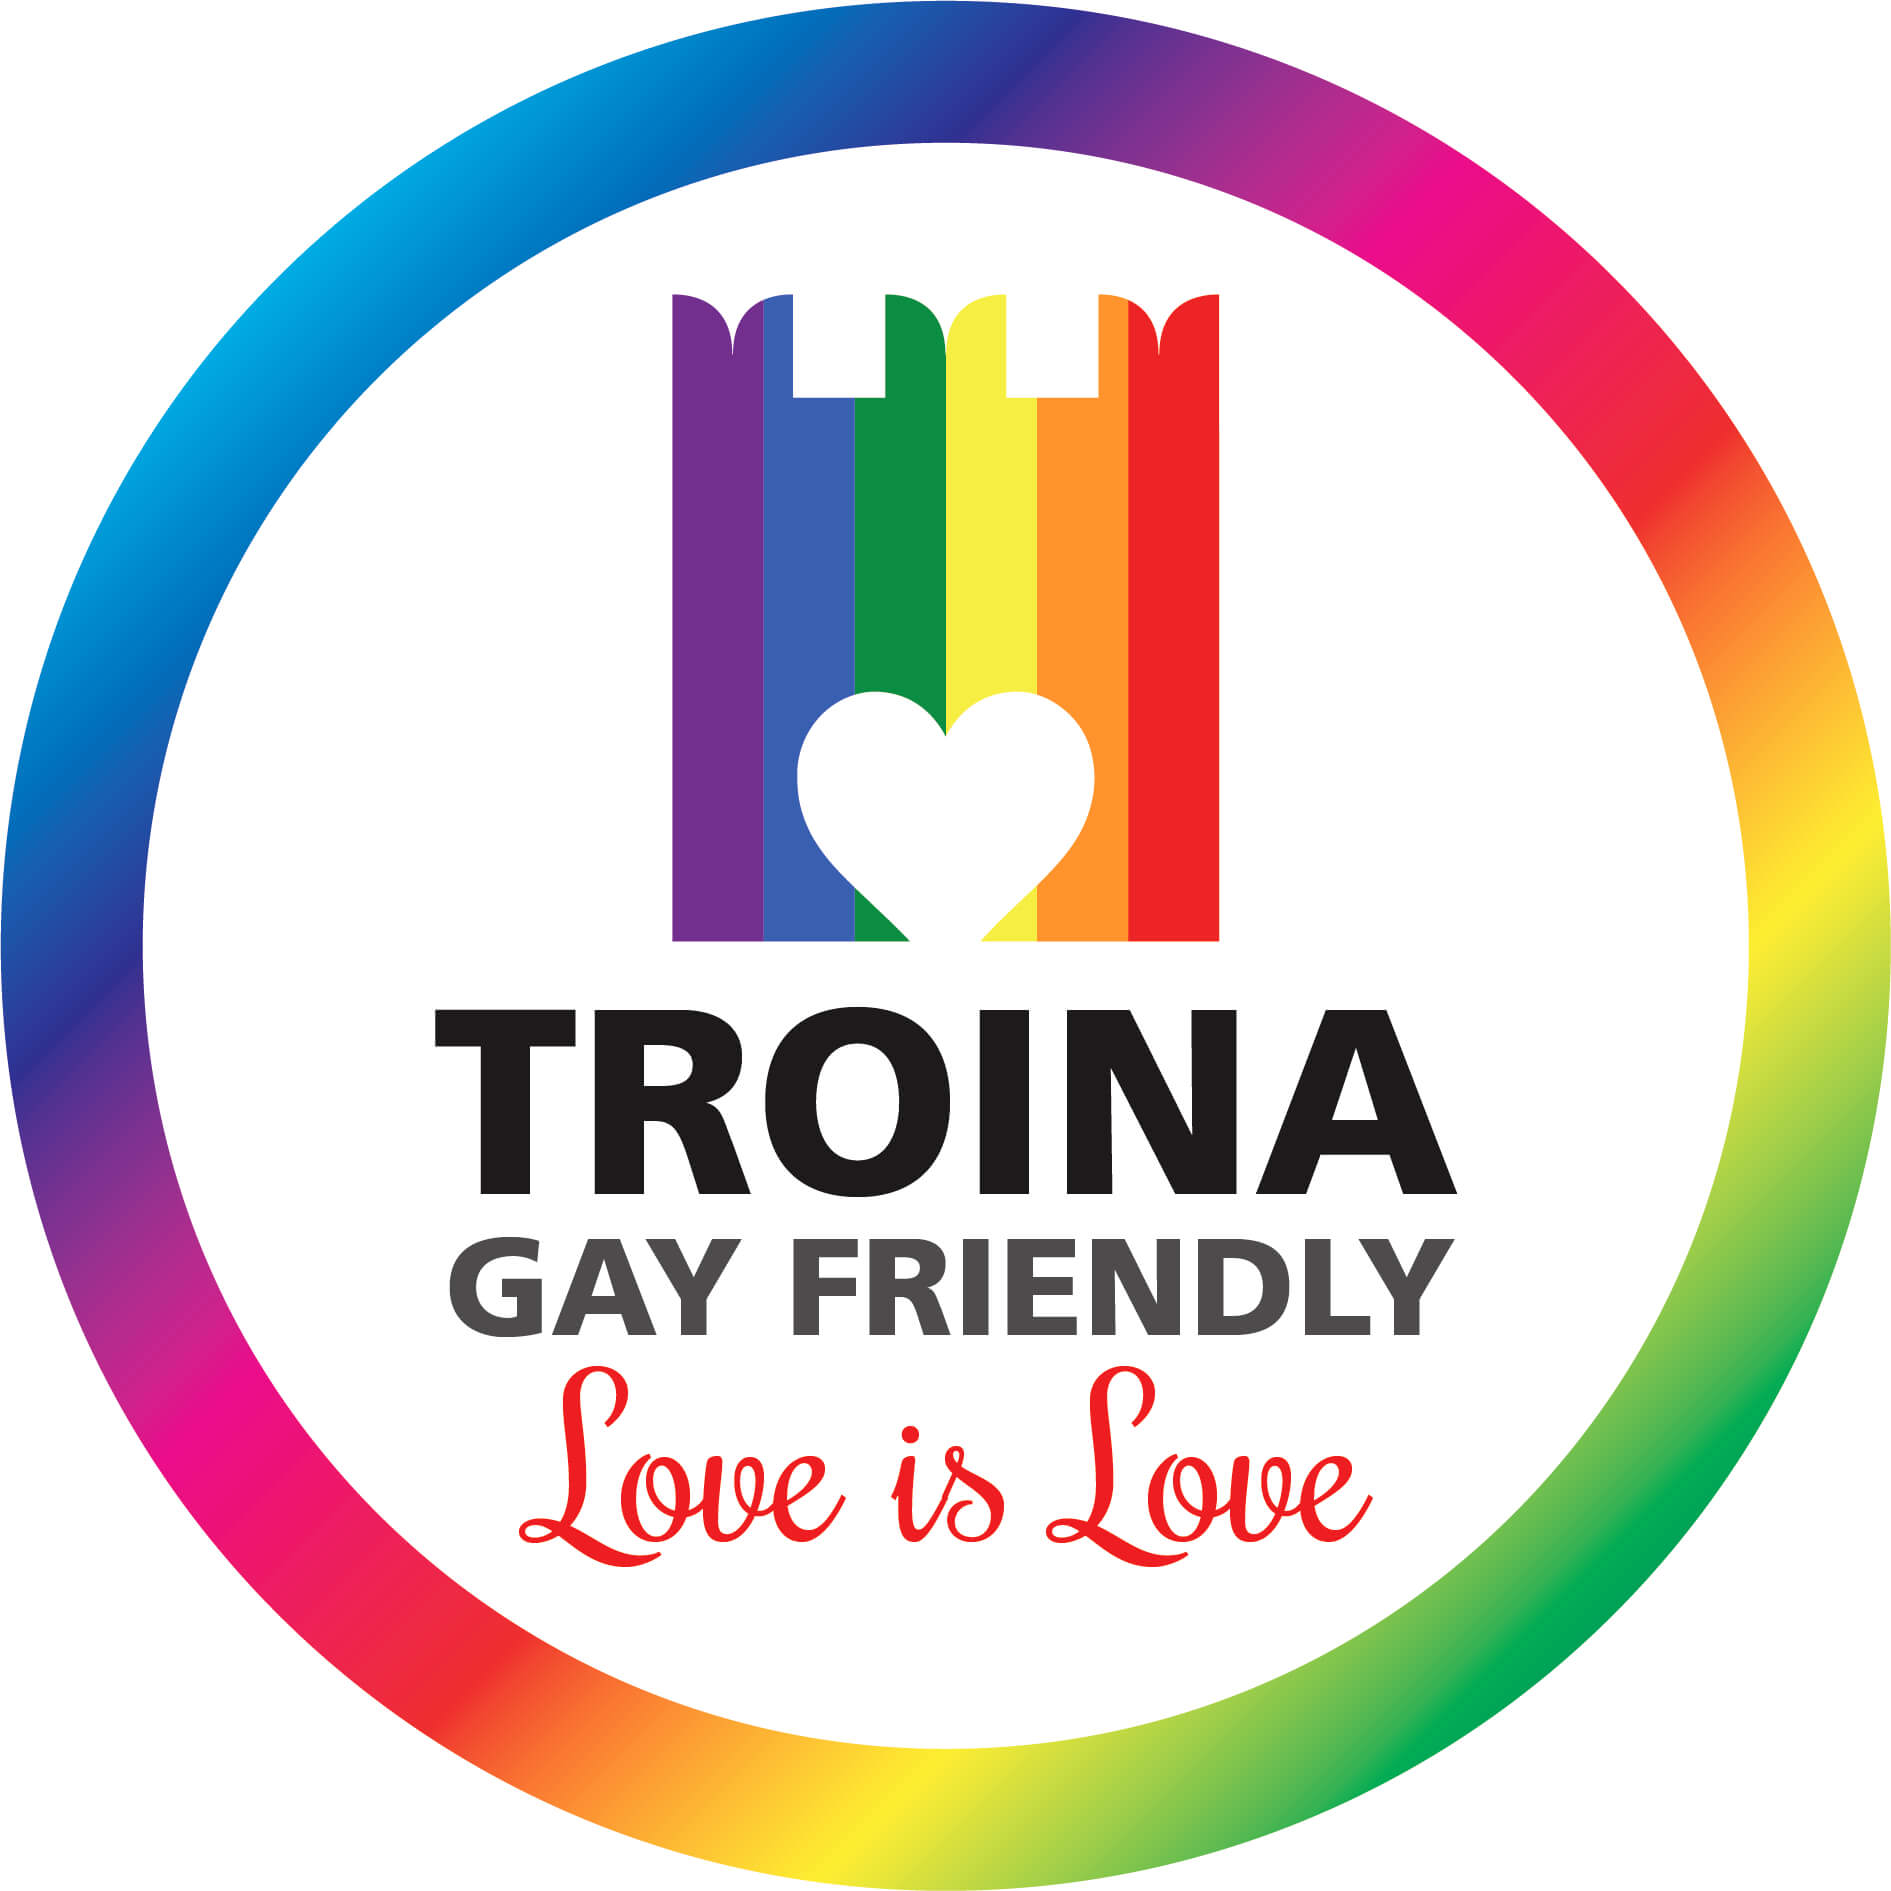 Troina diventa città gay friendly per accogliere il turismo LGBT - Troina comune gay friendly con tanto di delibera 2 - Gay.it